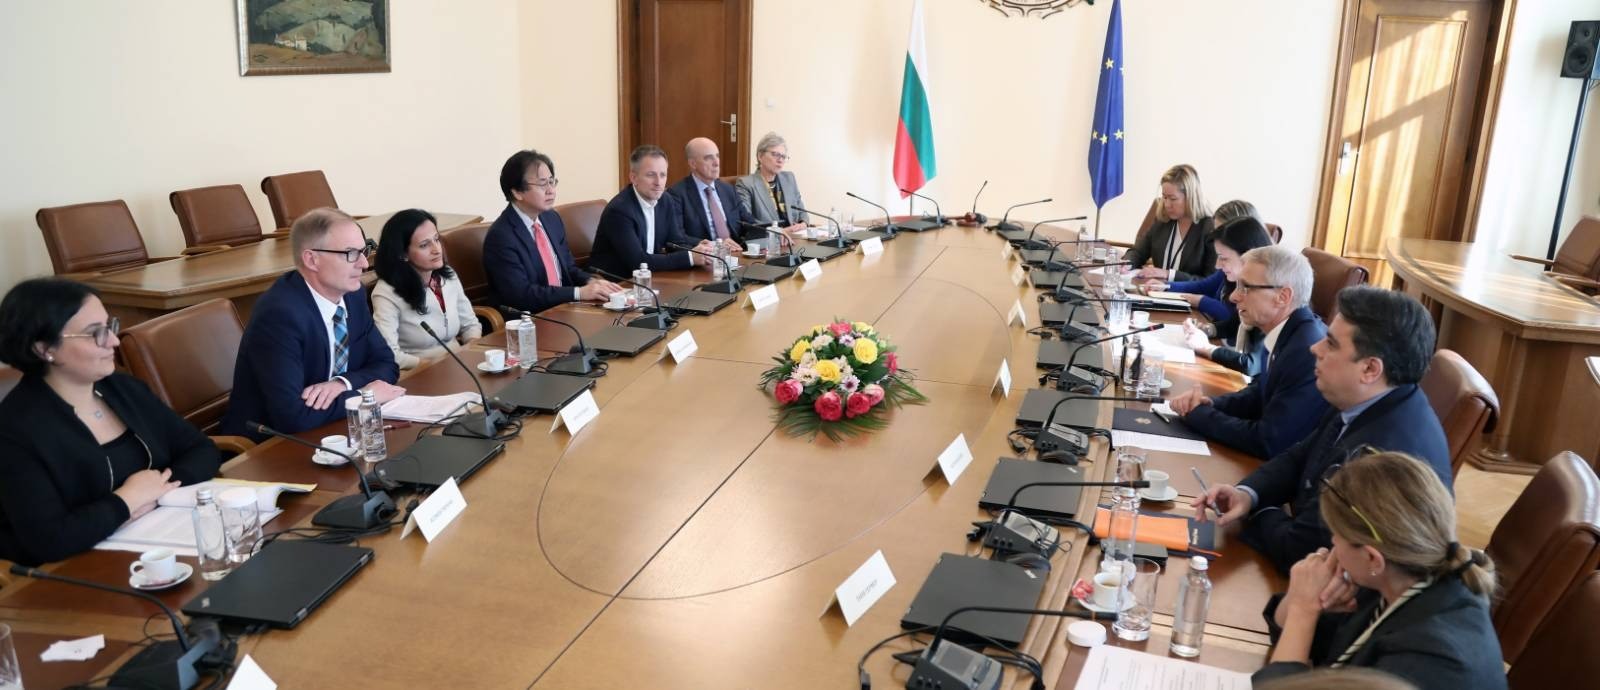 България разчита на експертизата на ЕБВР за още по-конкурентоспособна икономика 